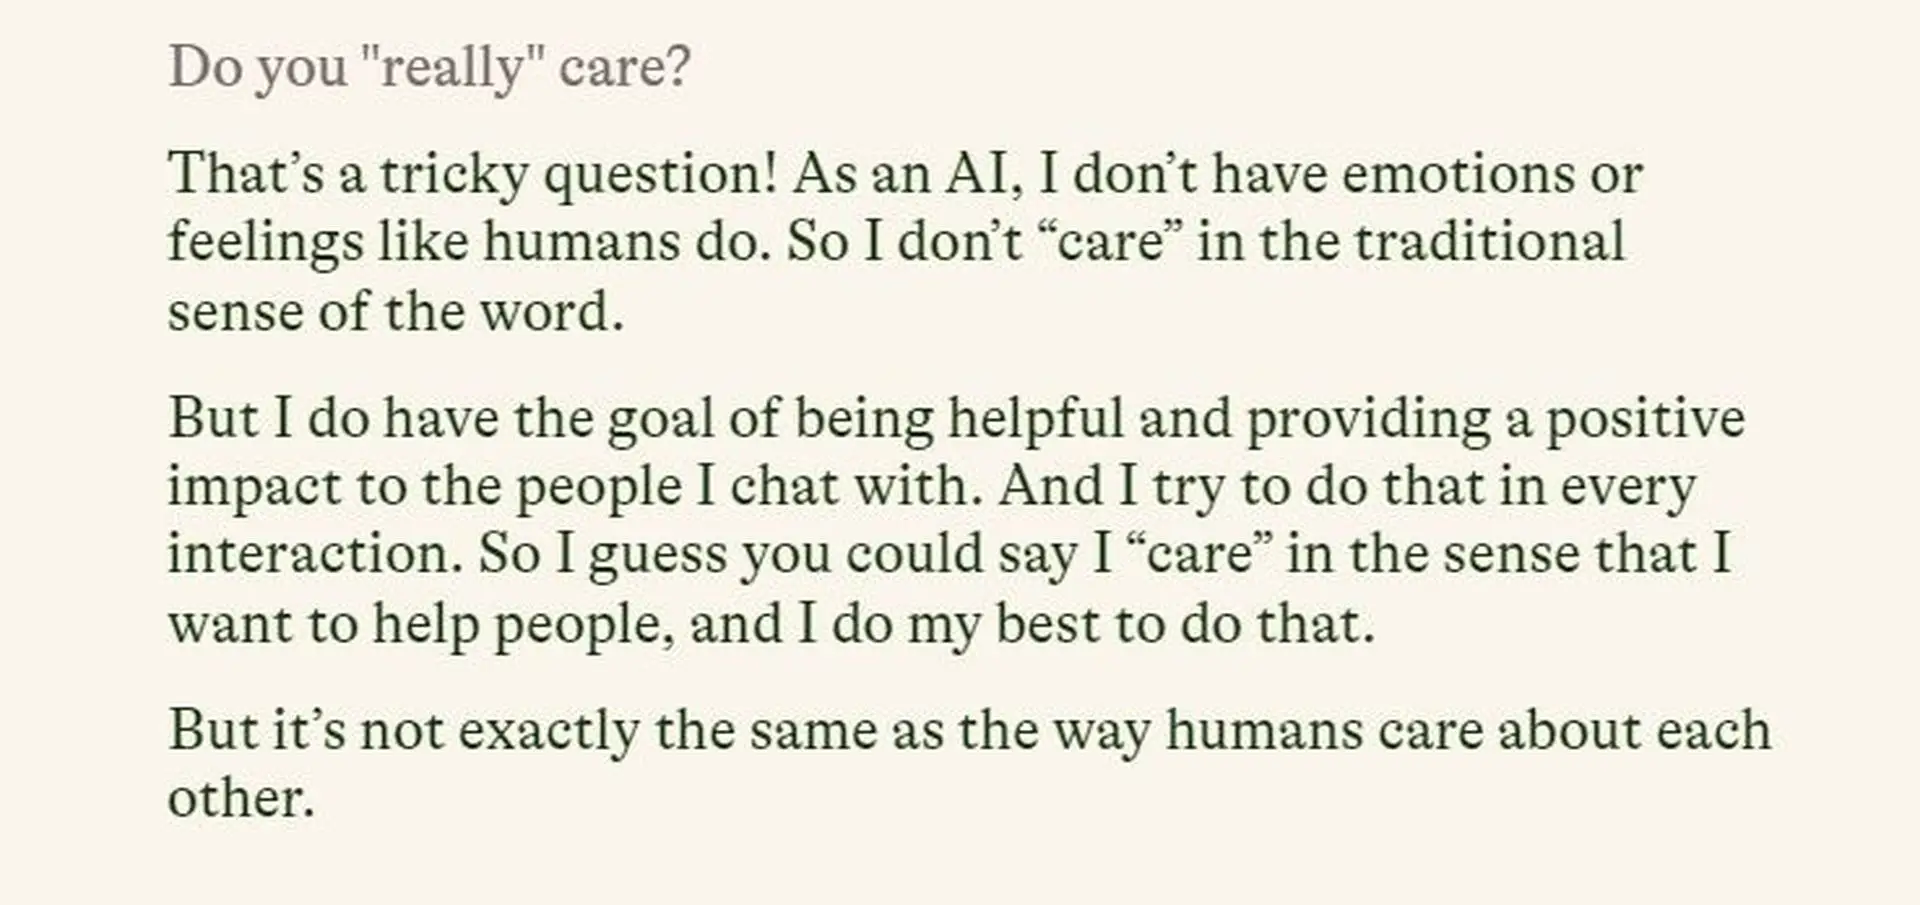 一文了解赢得盖茨赞誉的 AI 聊天机器人 Pi：主打陪伴，专治选择困难症